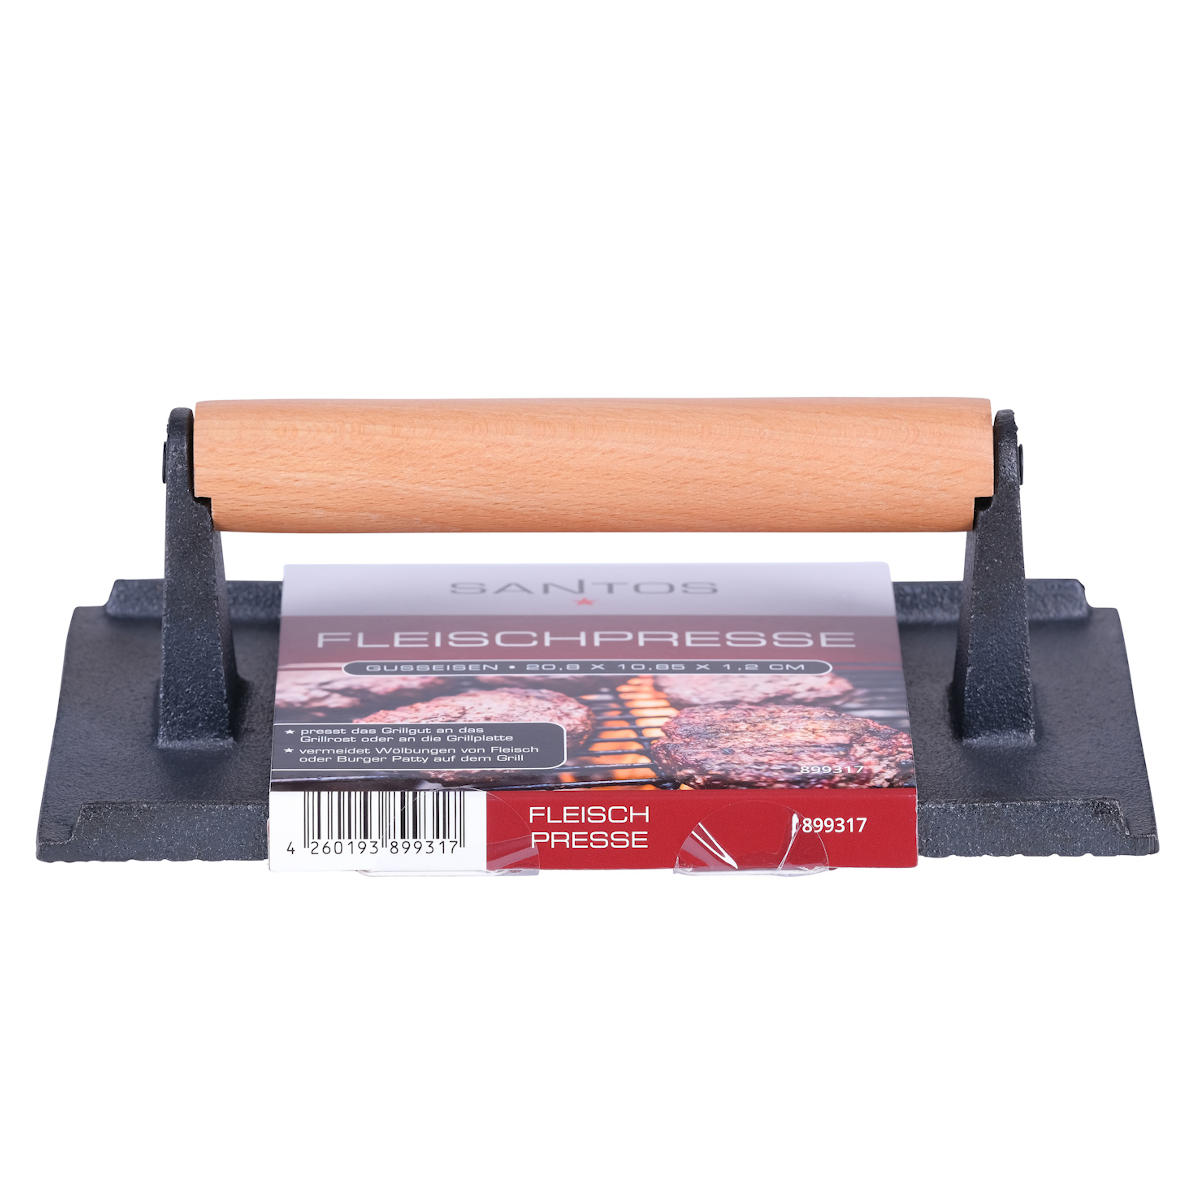 SANTOS Fleischpresse mit Holzgriff Verpackung